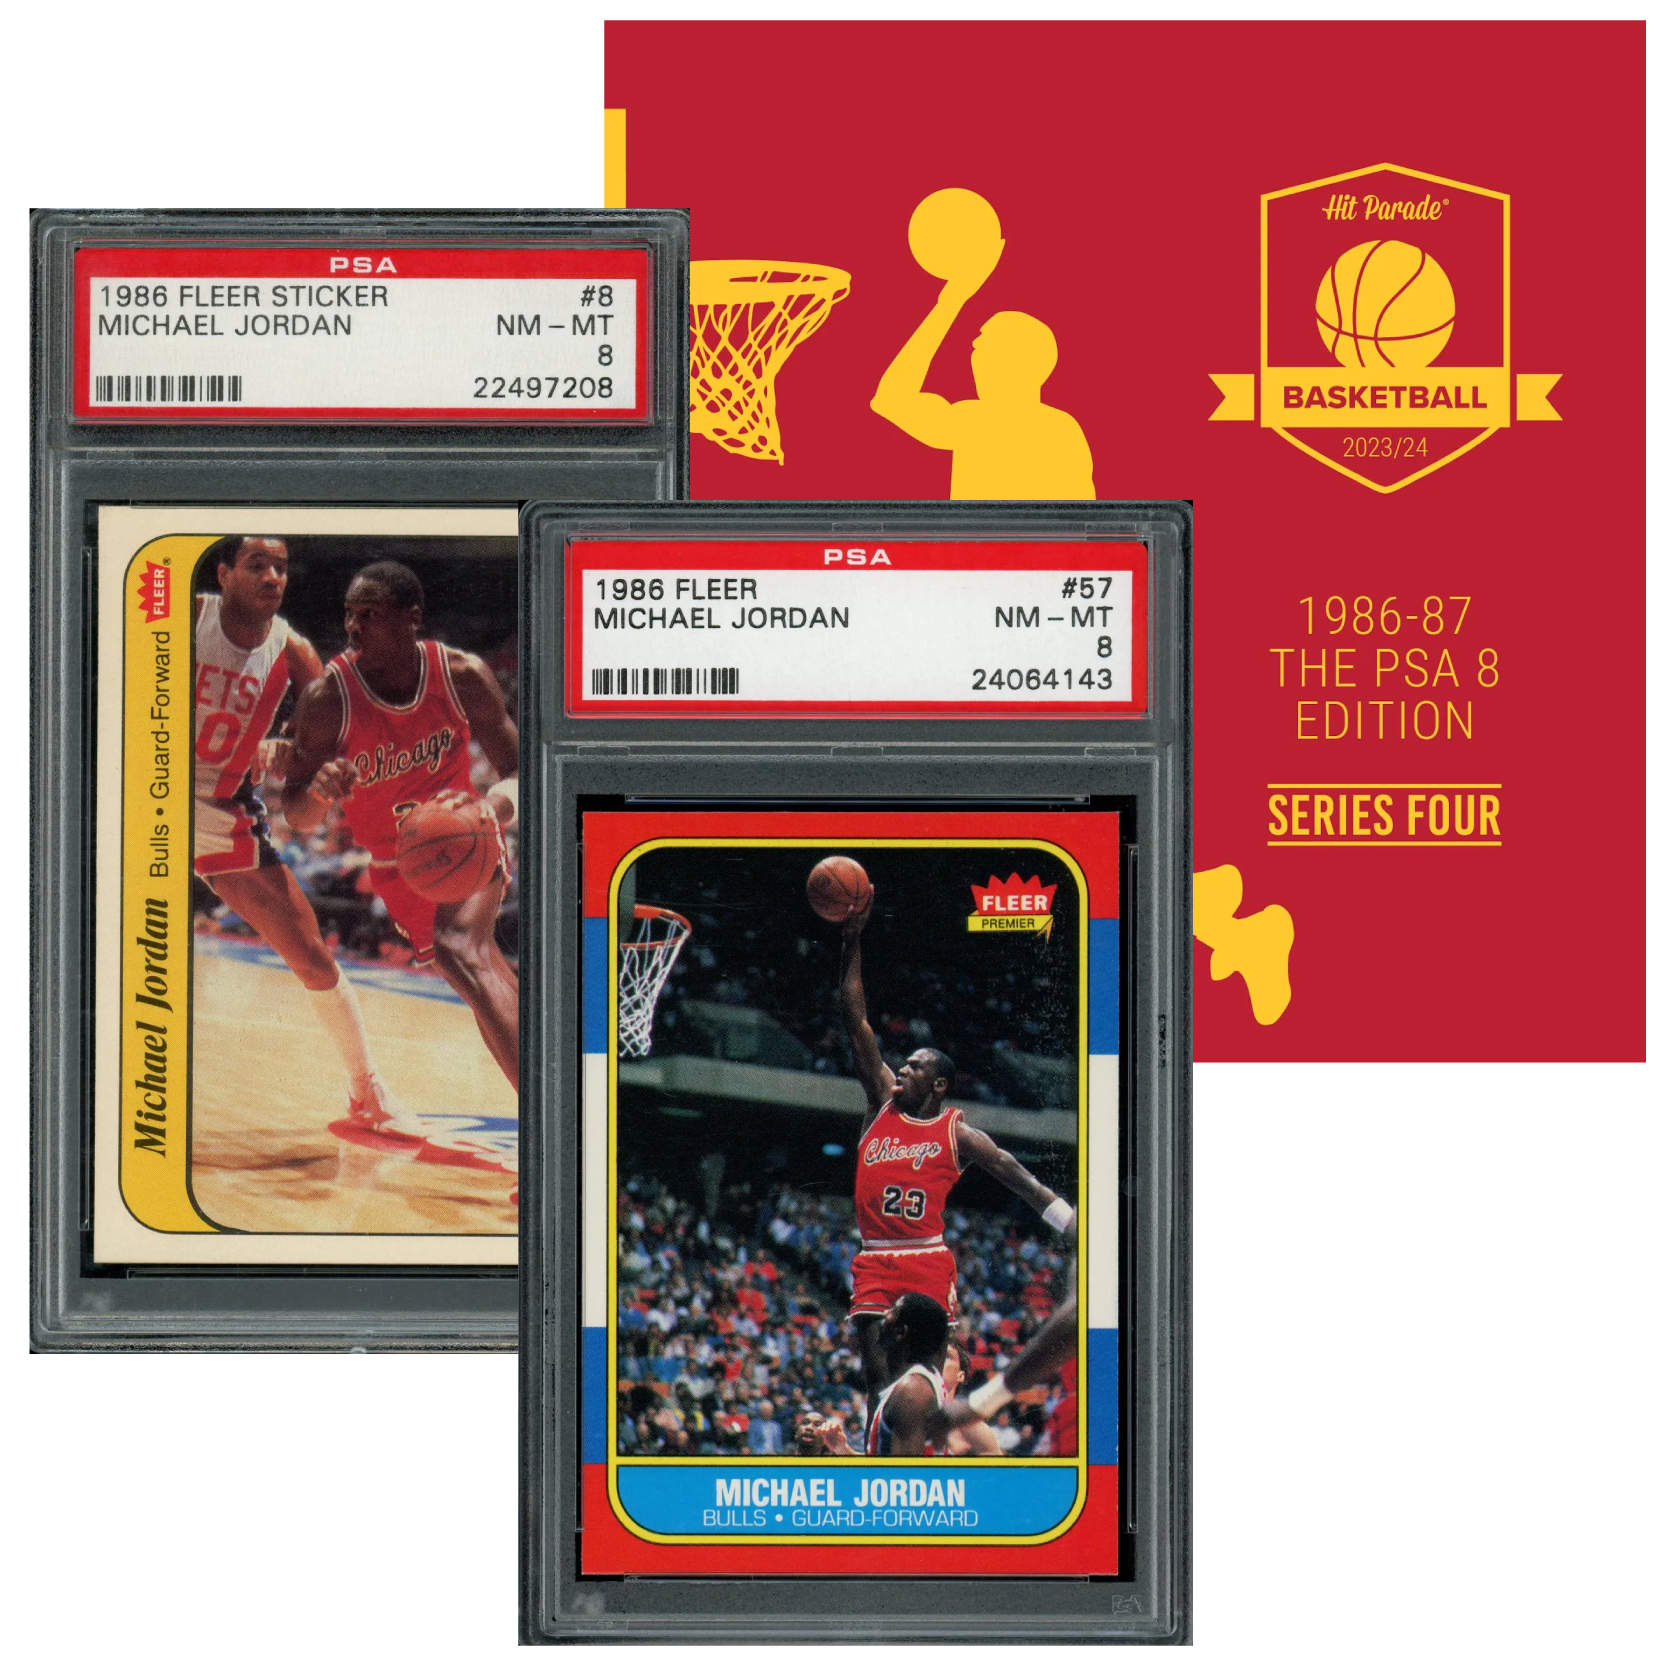 2023/24 Hit Parade Basketball 1986 PSA 8 Edition Series 4 Hobby Box